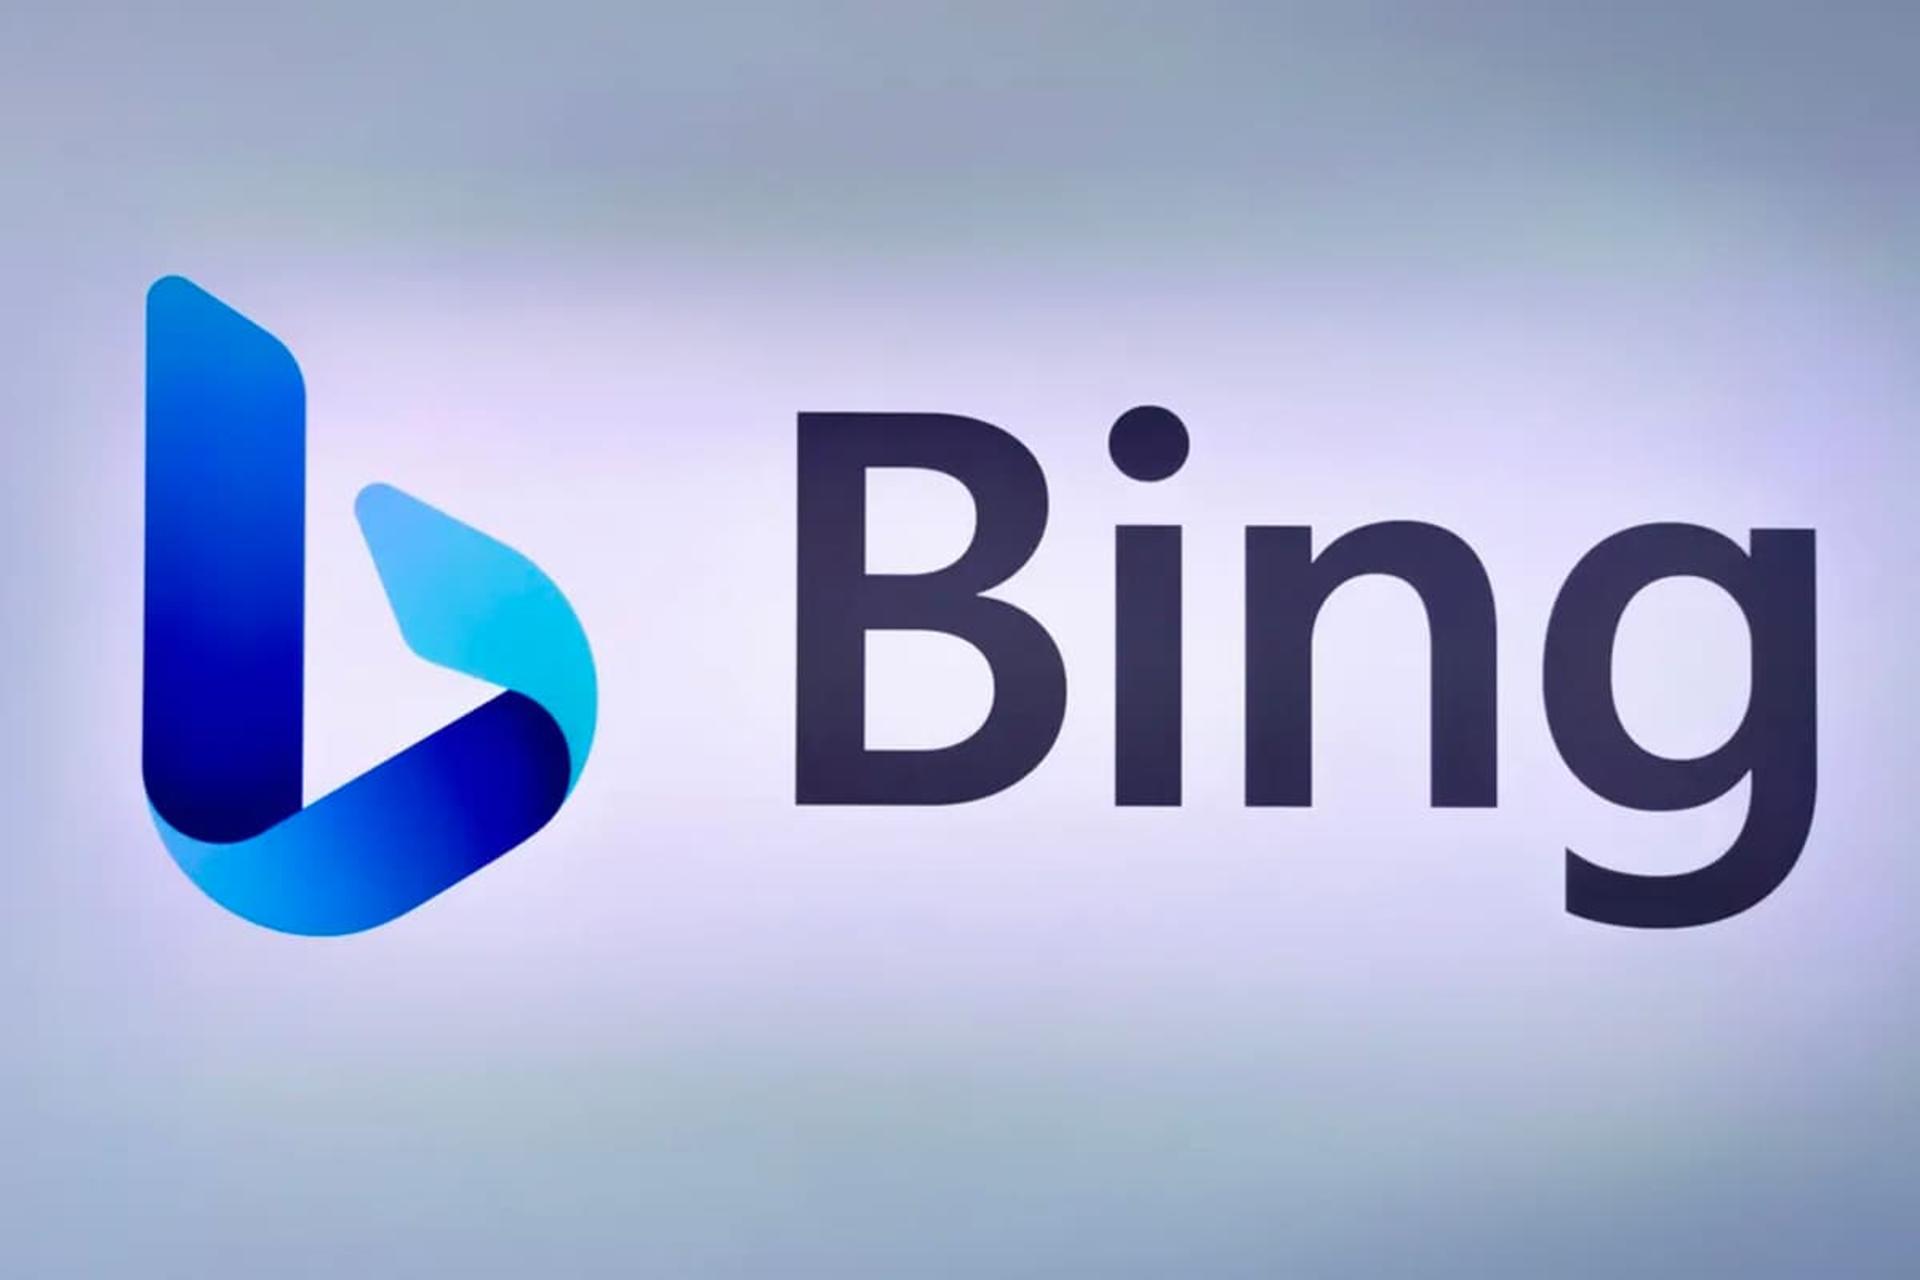 مرجع متخصصين ايران مايكروسافت بينگ / Bing لوگو رنگ آبي